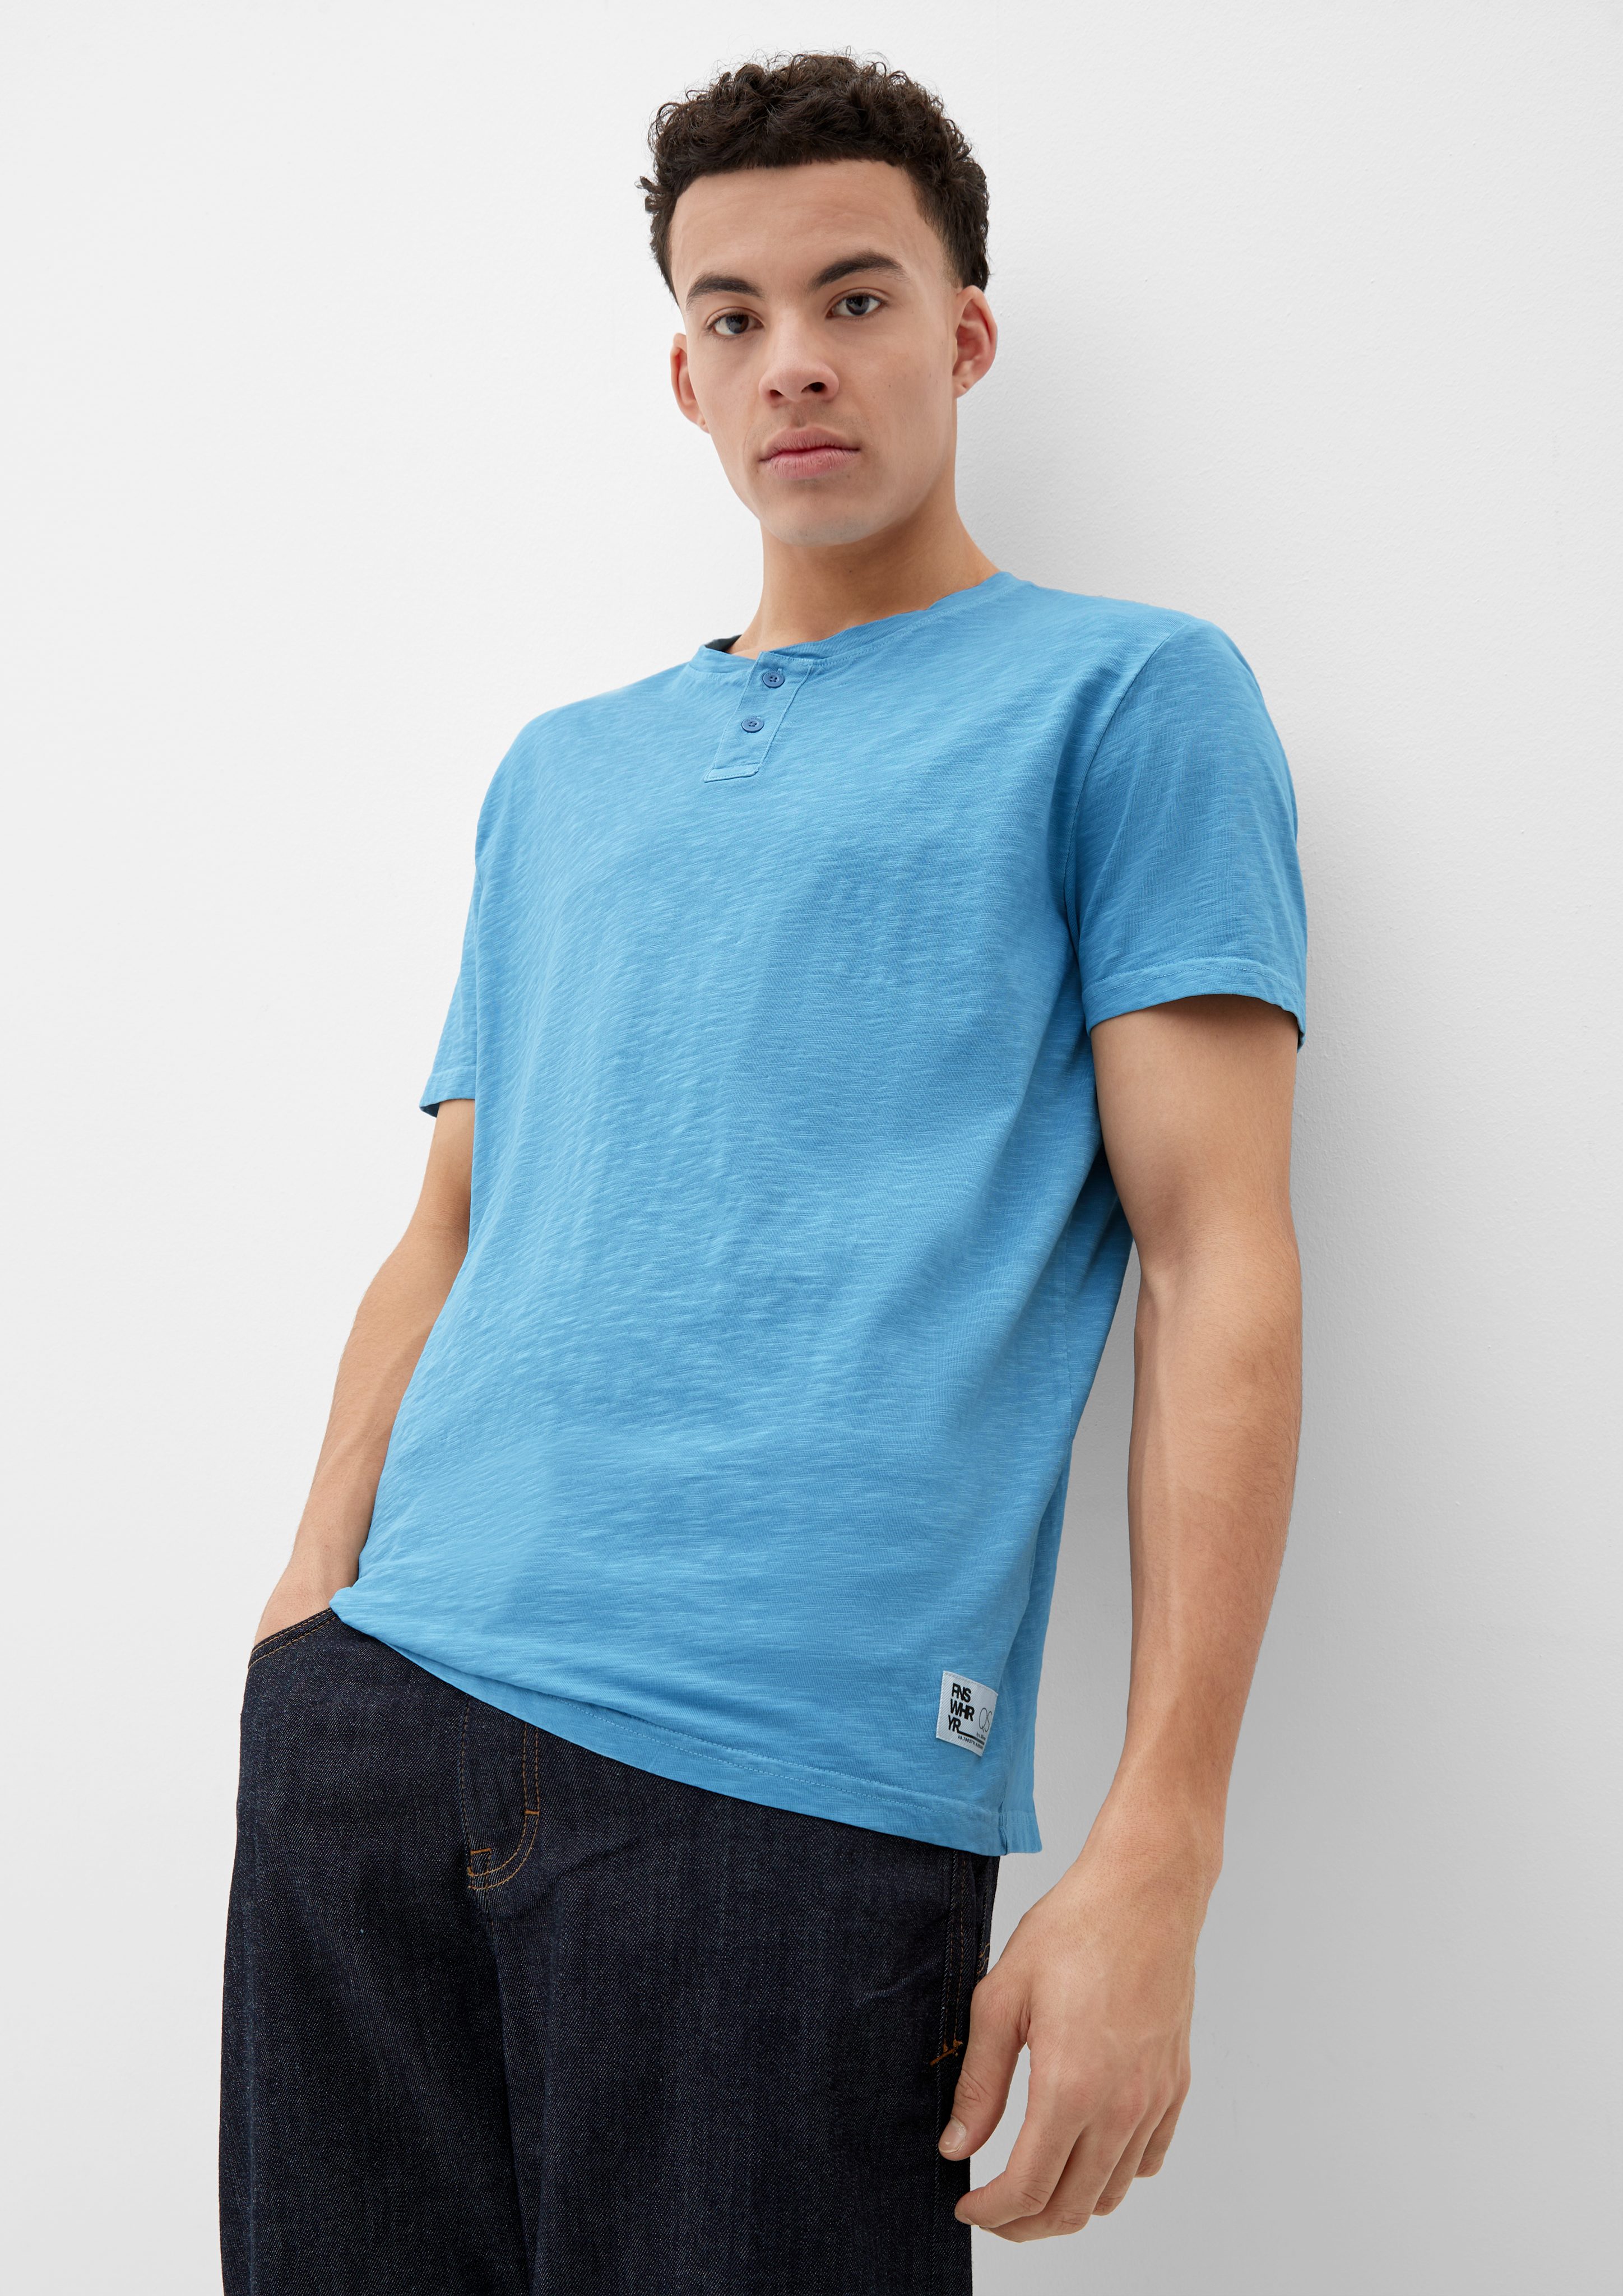 QS Kurzarmshirt T-Shirt mit Henleyausschnitt hellblau Label-Patch